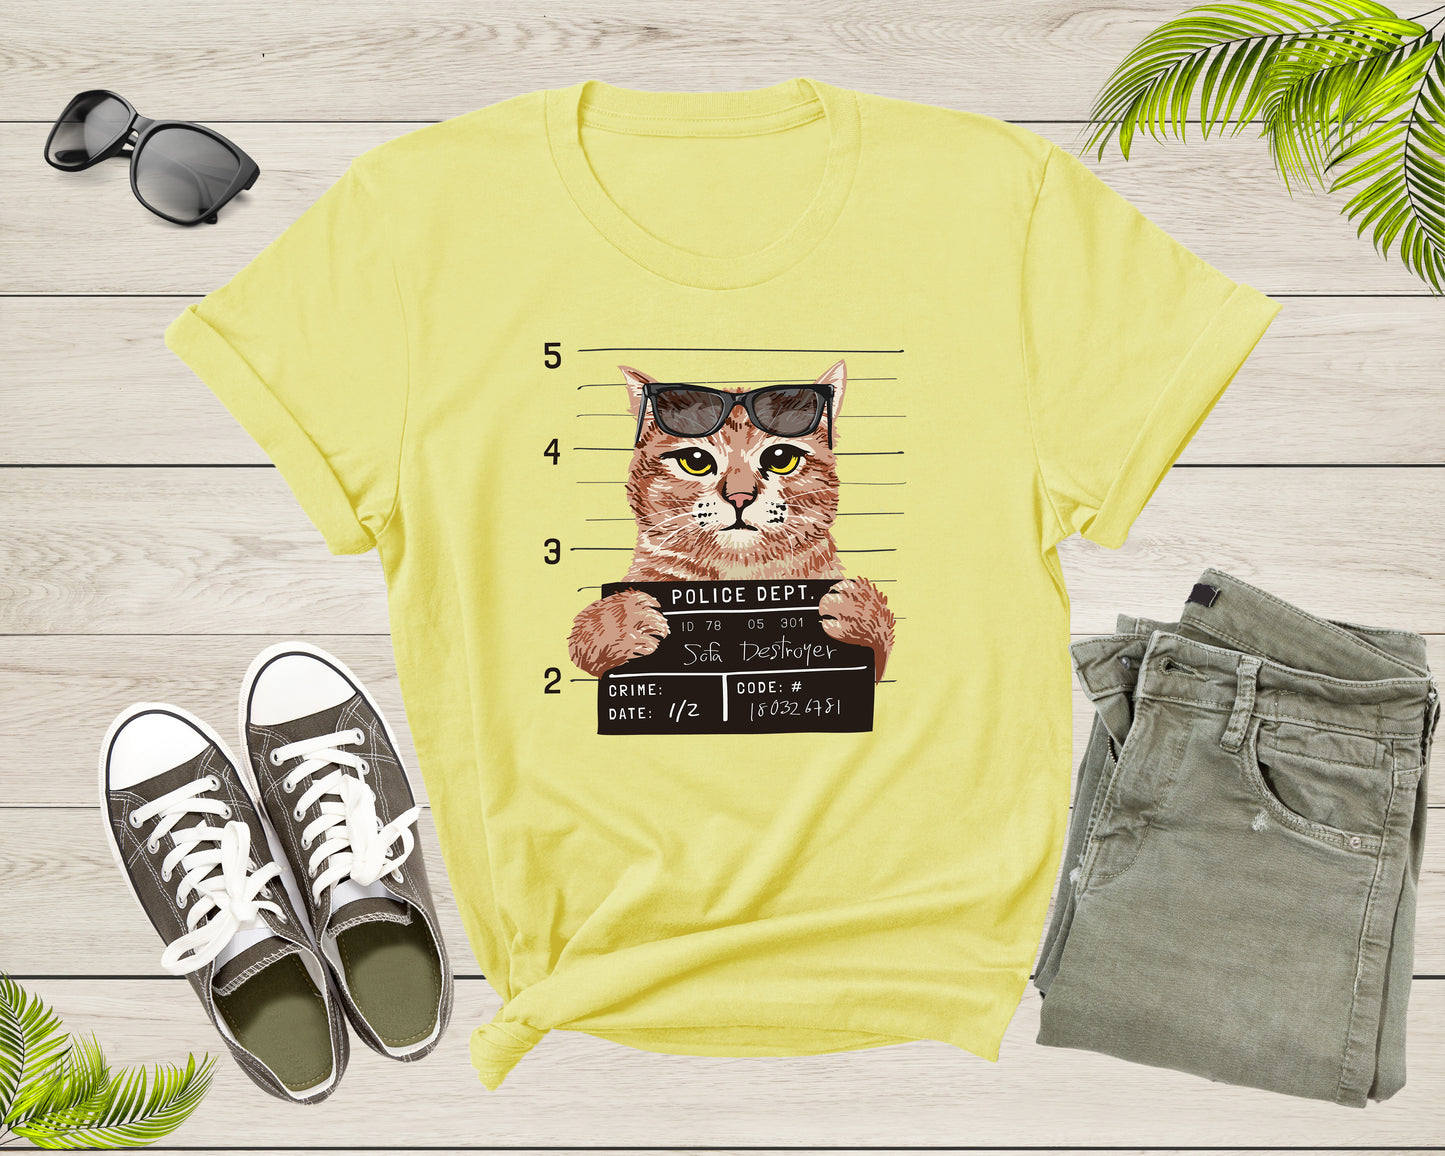 Funny Sofa Destroyer Cat Kitten Kitty with Sun Glasses Cat Shirt T-Shirt Cat Lover Gift T Shirt for Men Women Kids Boys Girls Tshirt